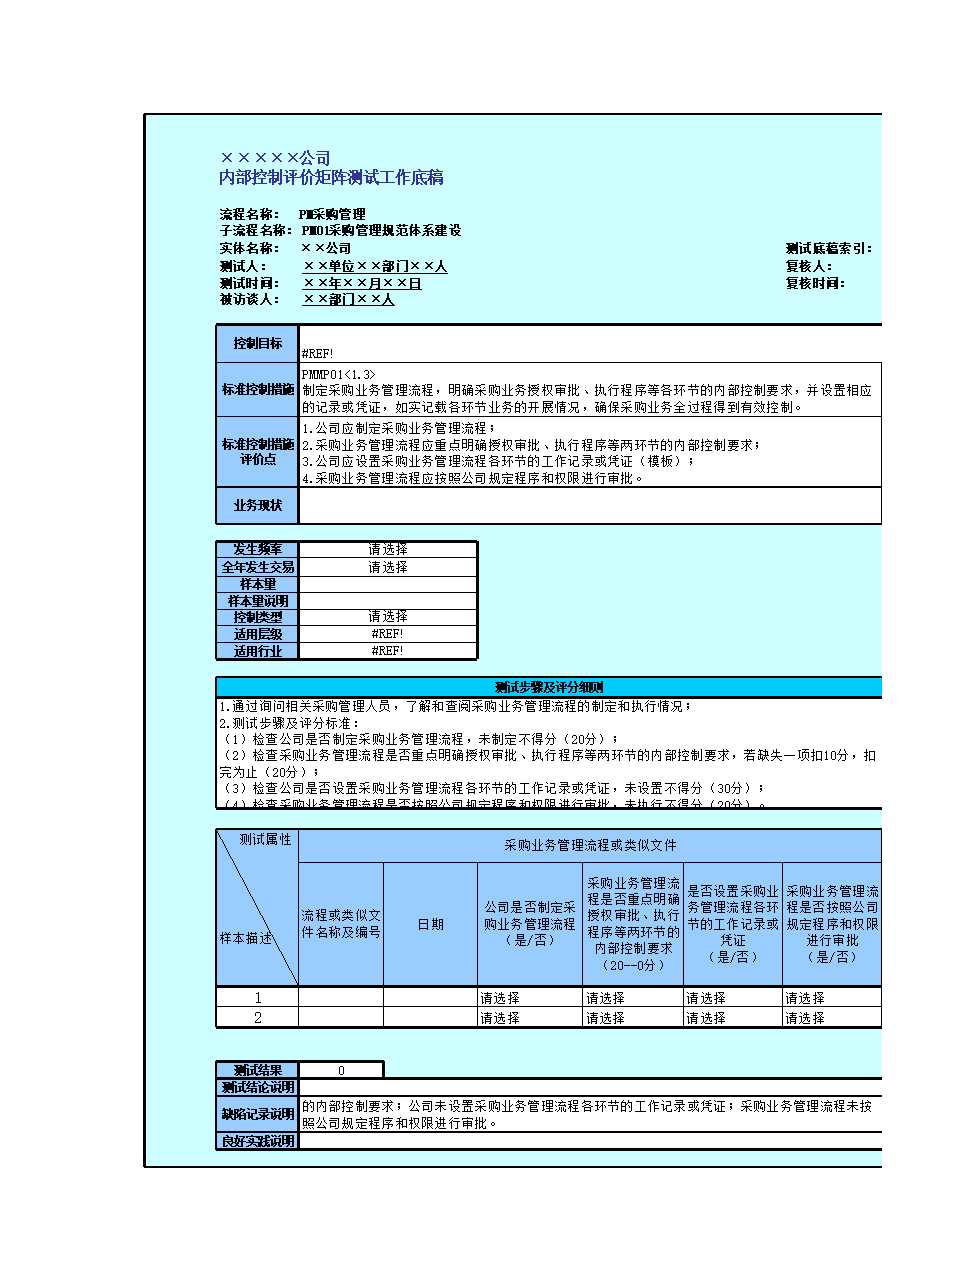 控制活动(采购管理)Excel模板_05